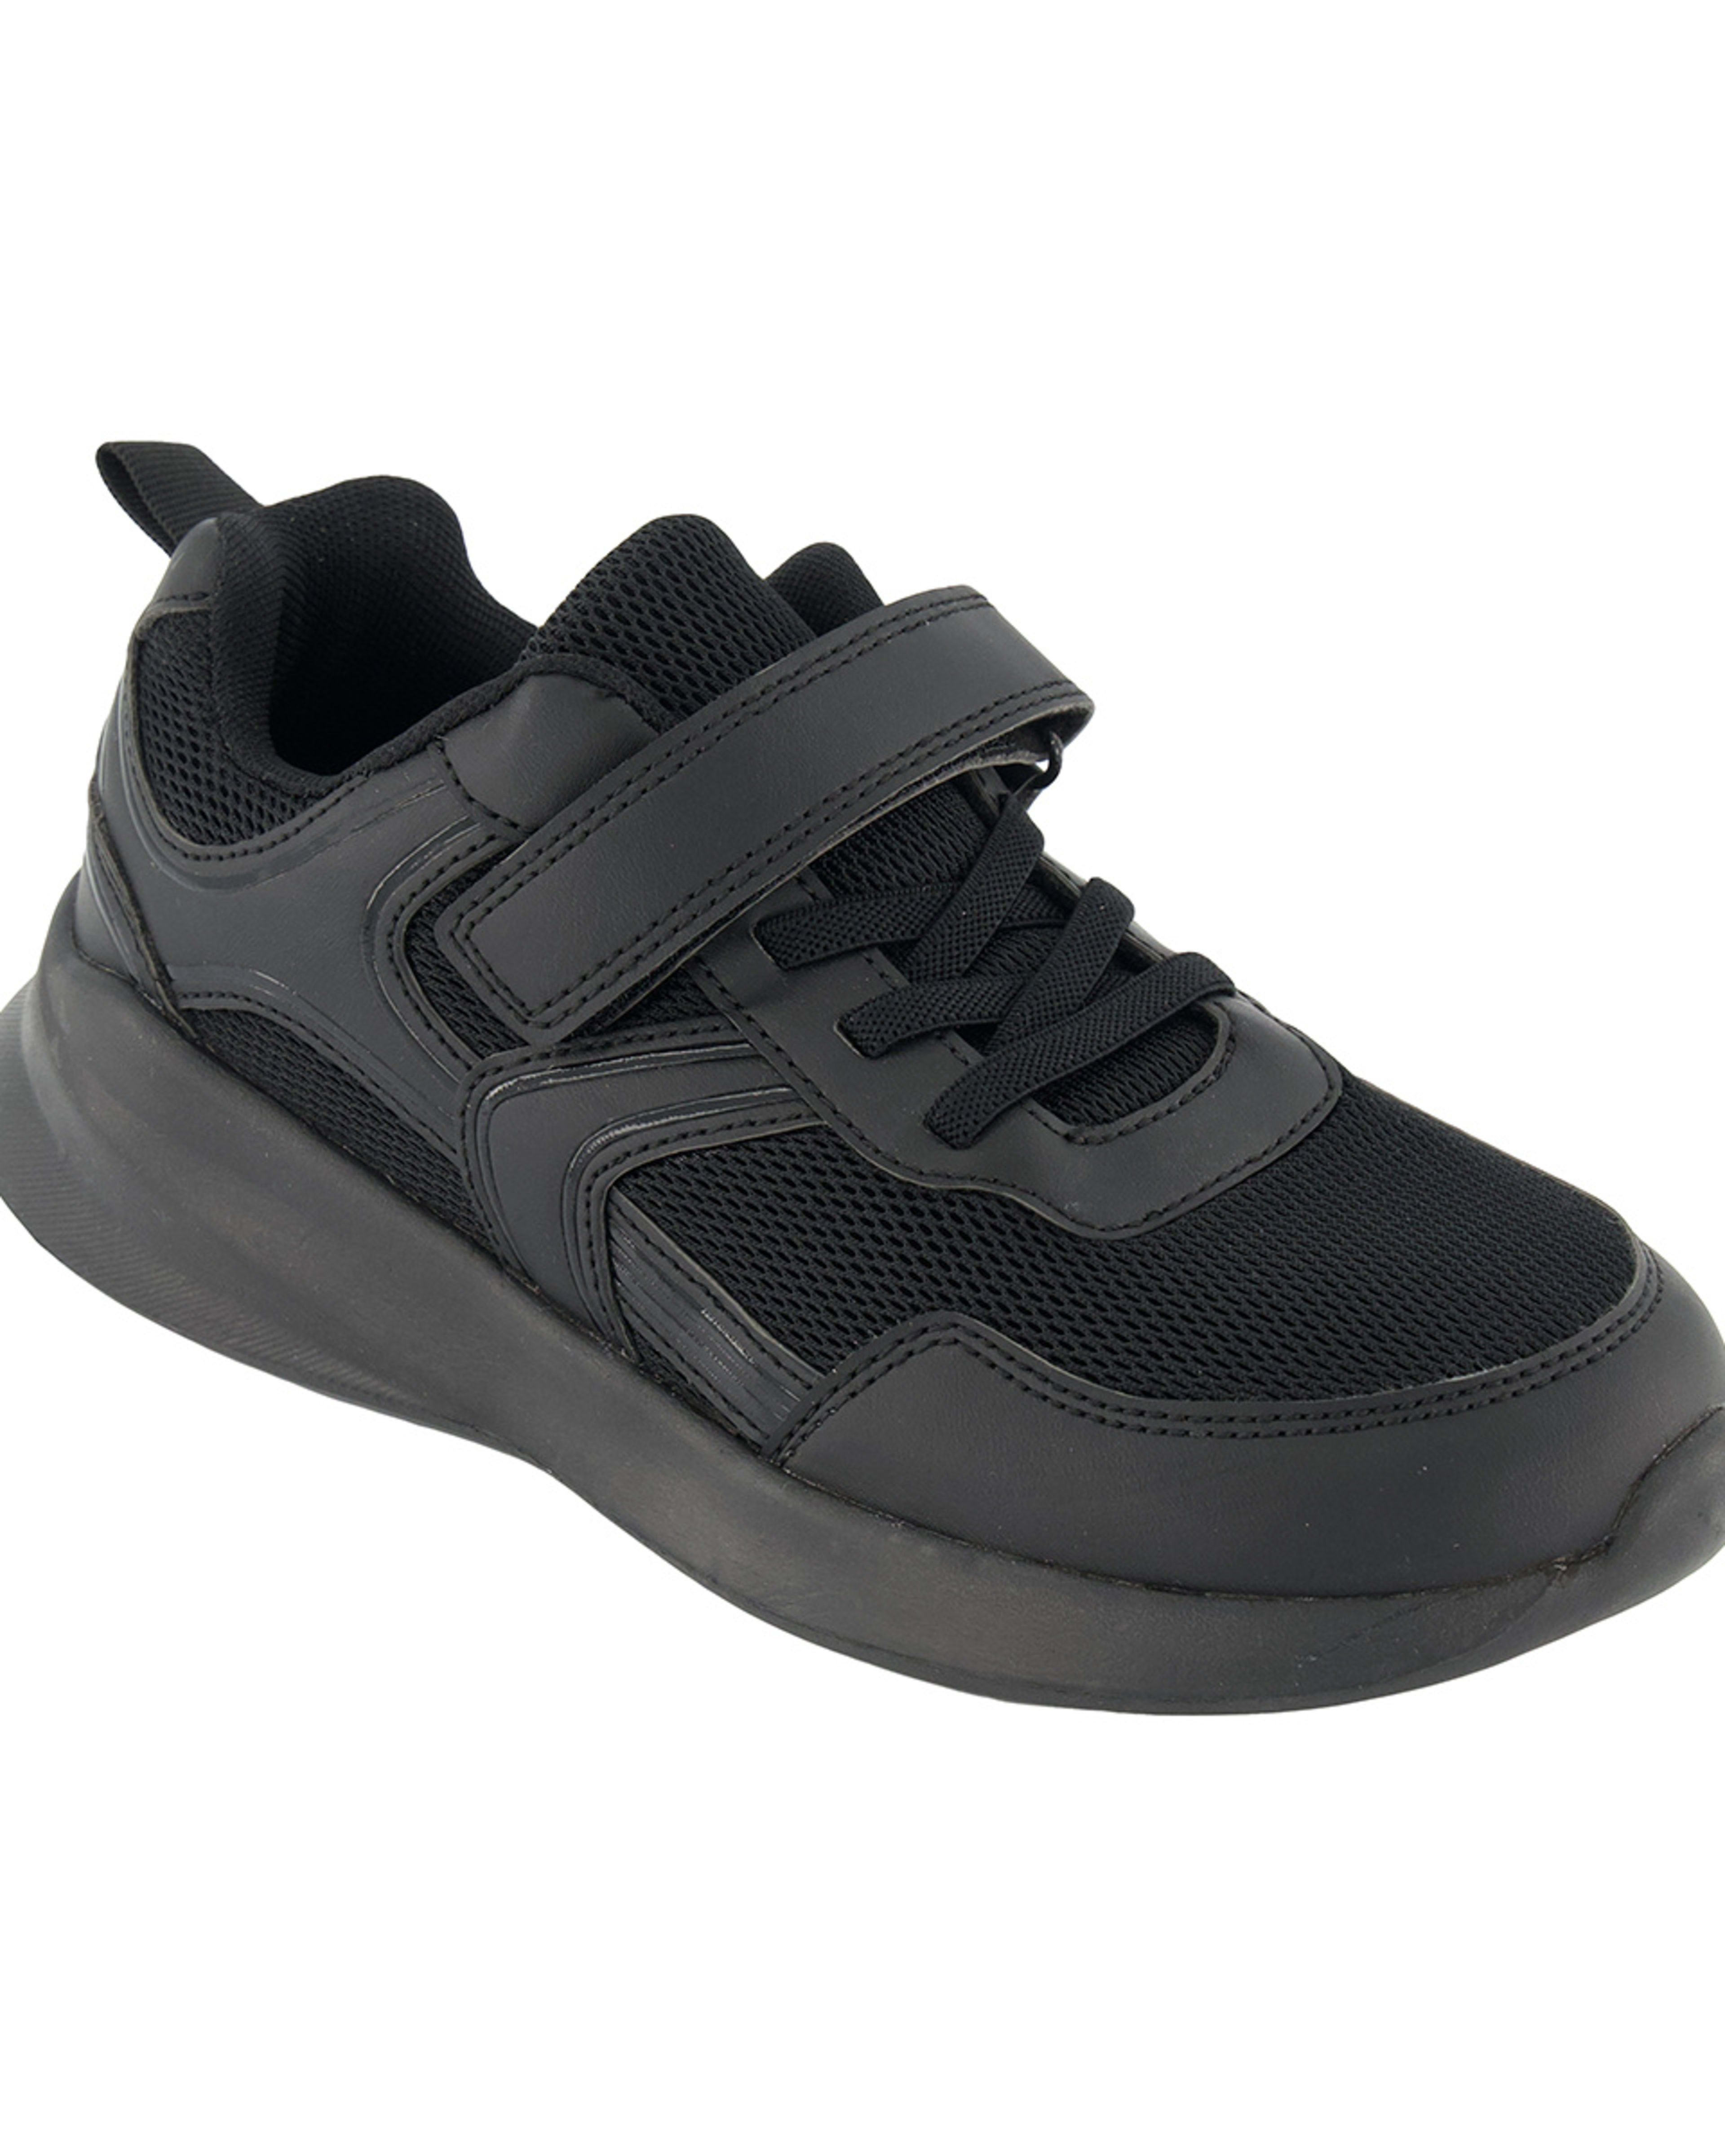 Senior Sneakers - Kmart